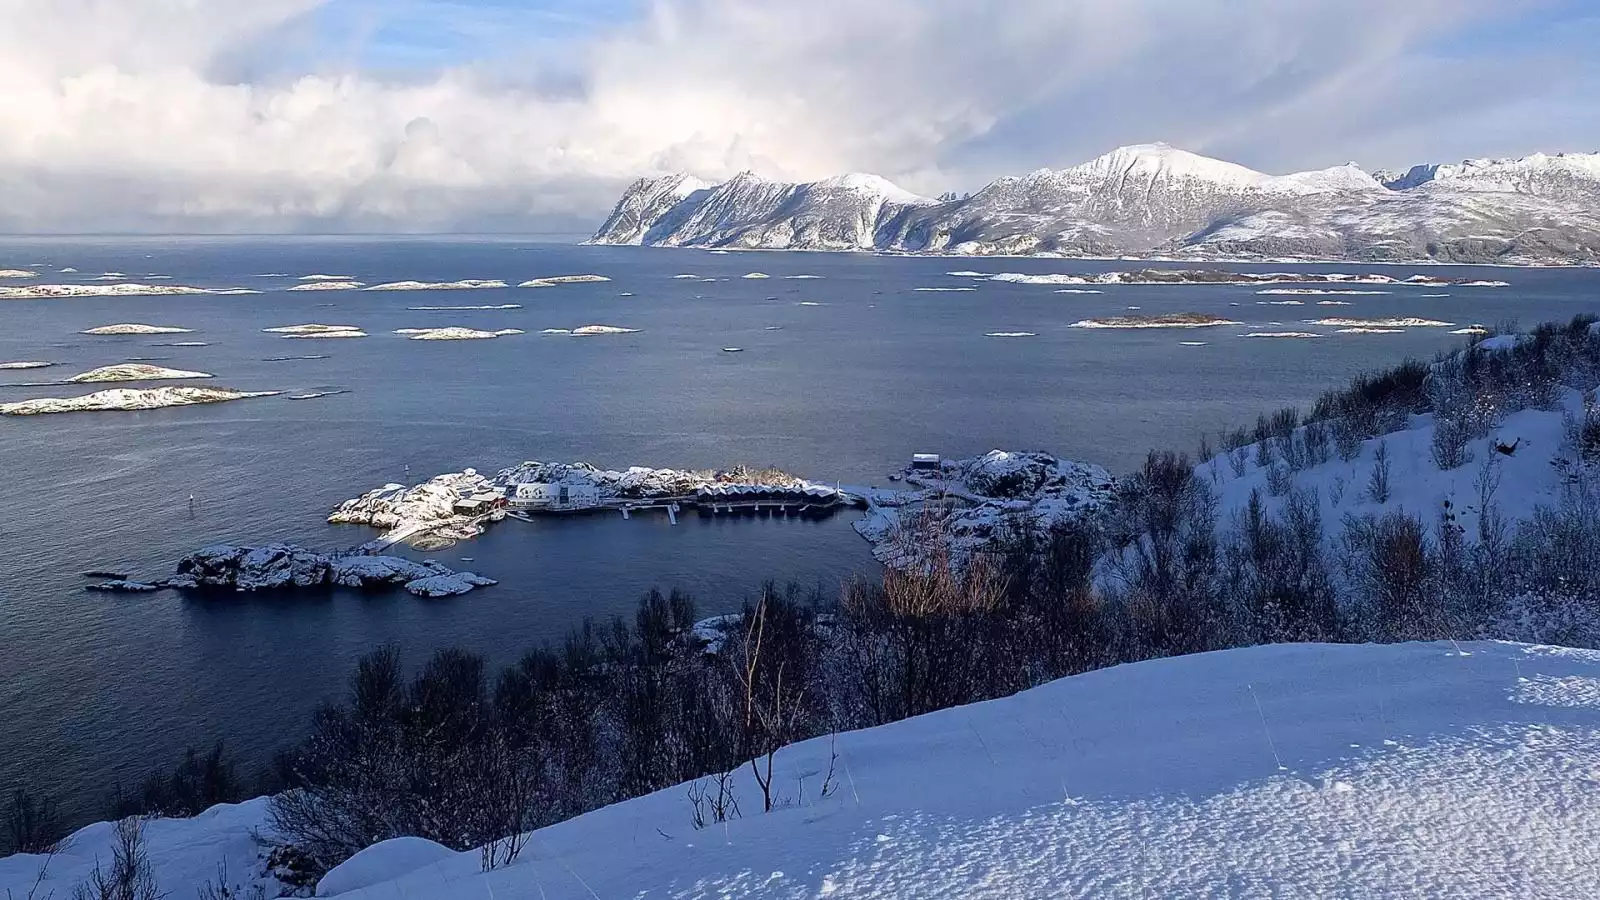 Welkom in de winter van Noord-Noorwegen!